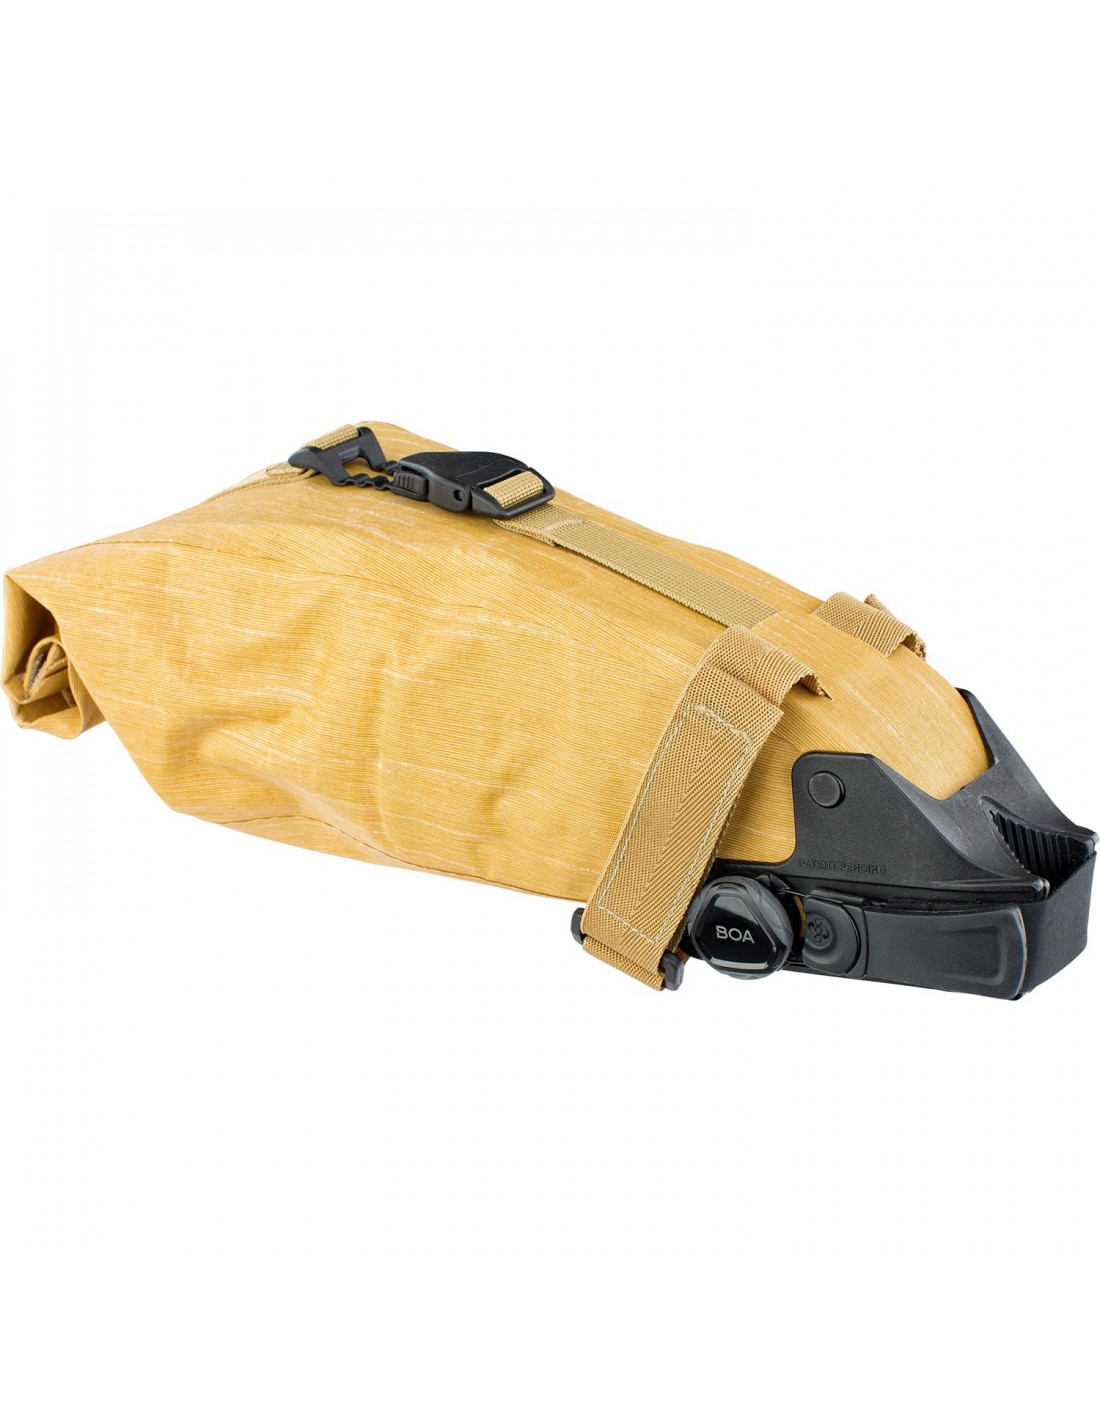 Evoc SEAT BAG Boa Gr. S - Loam Taschenfarbe - Gelb, Taschenvariante - Satteltasche, von Evoc